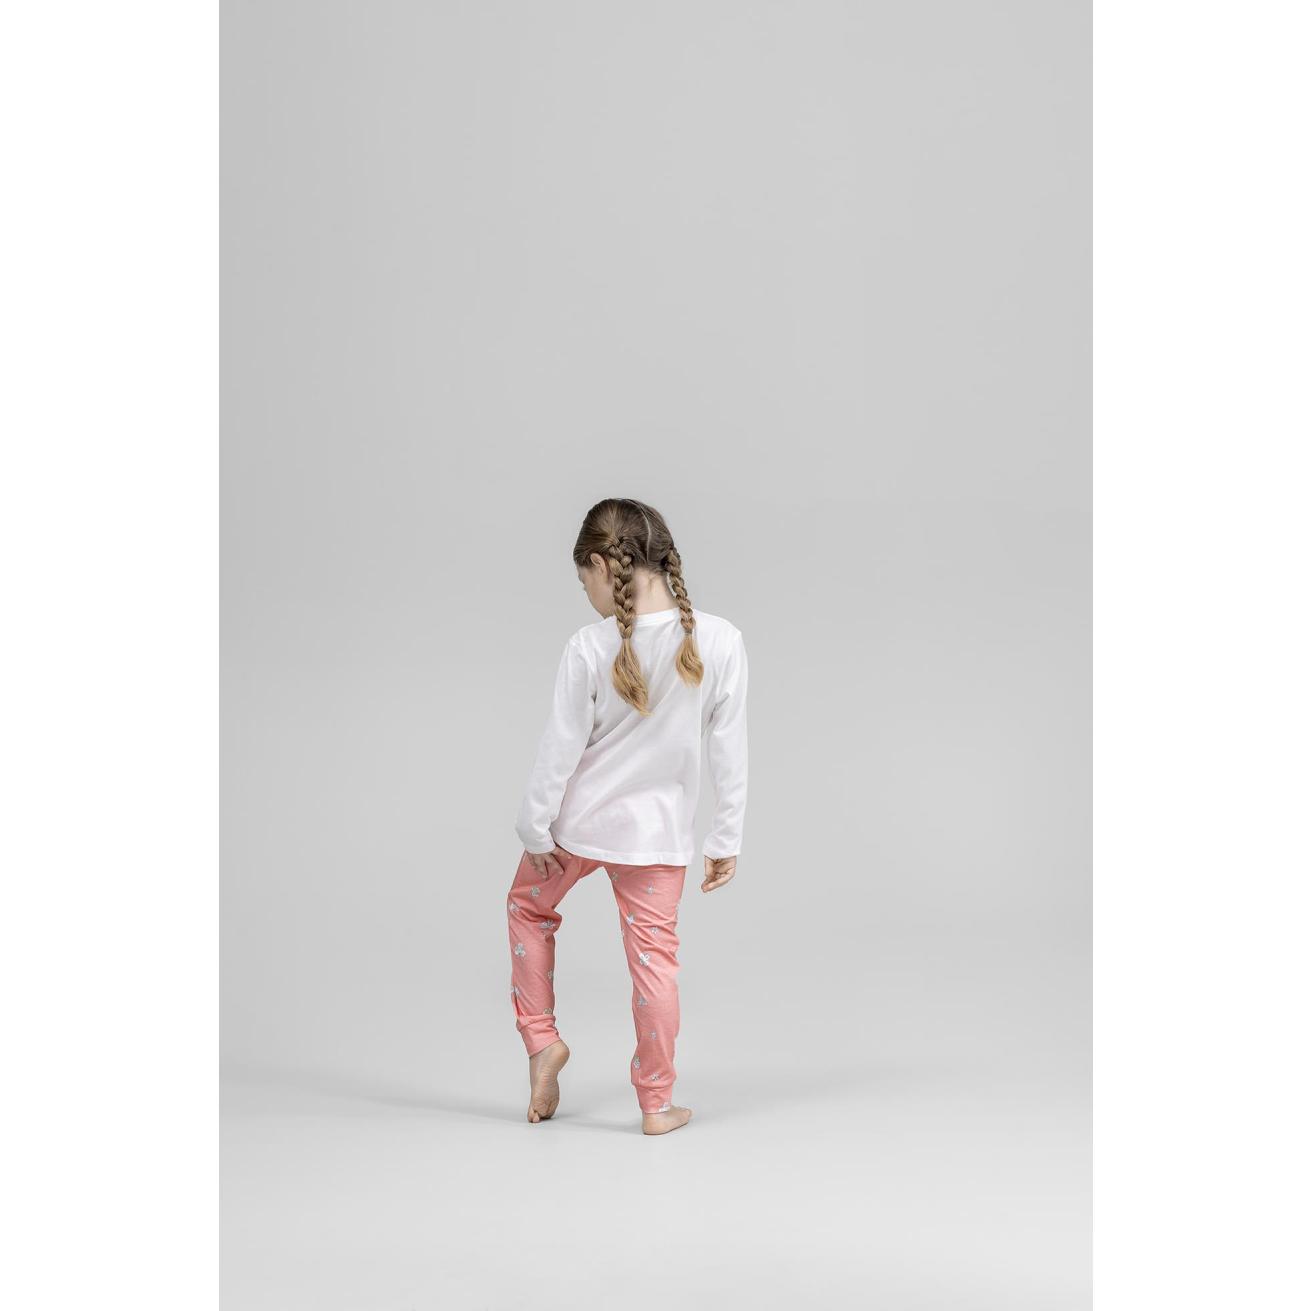 Пижама для девочек Kids by togas Стробби бело-розовый 128-134 см, цвет белый, размер 128-134 см - фото 6